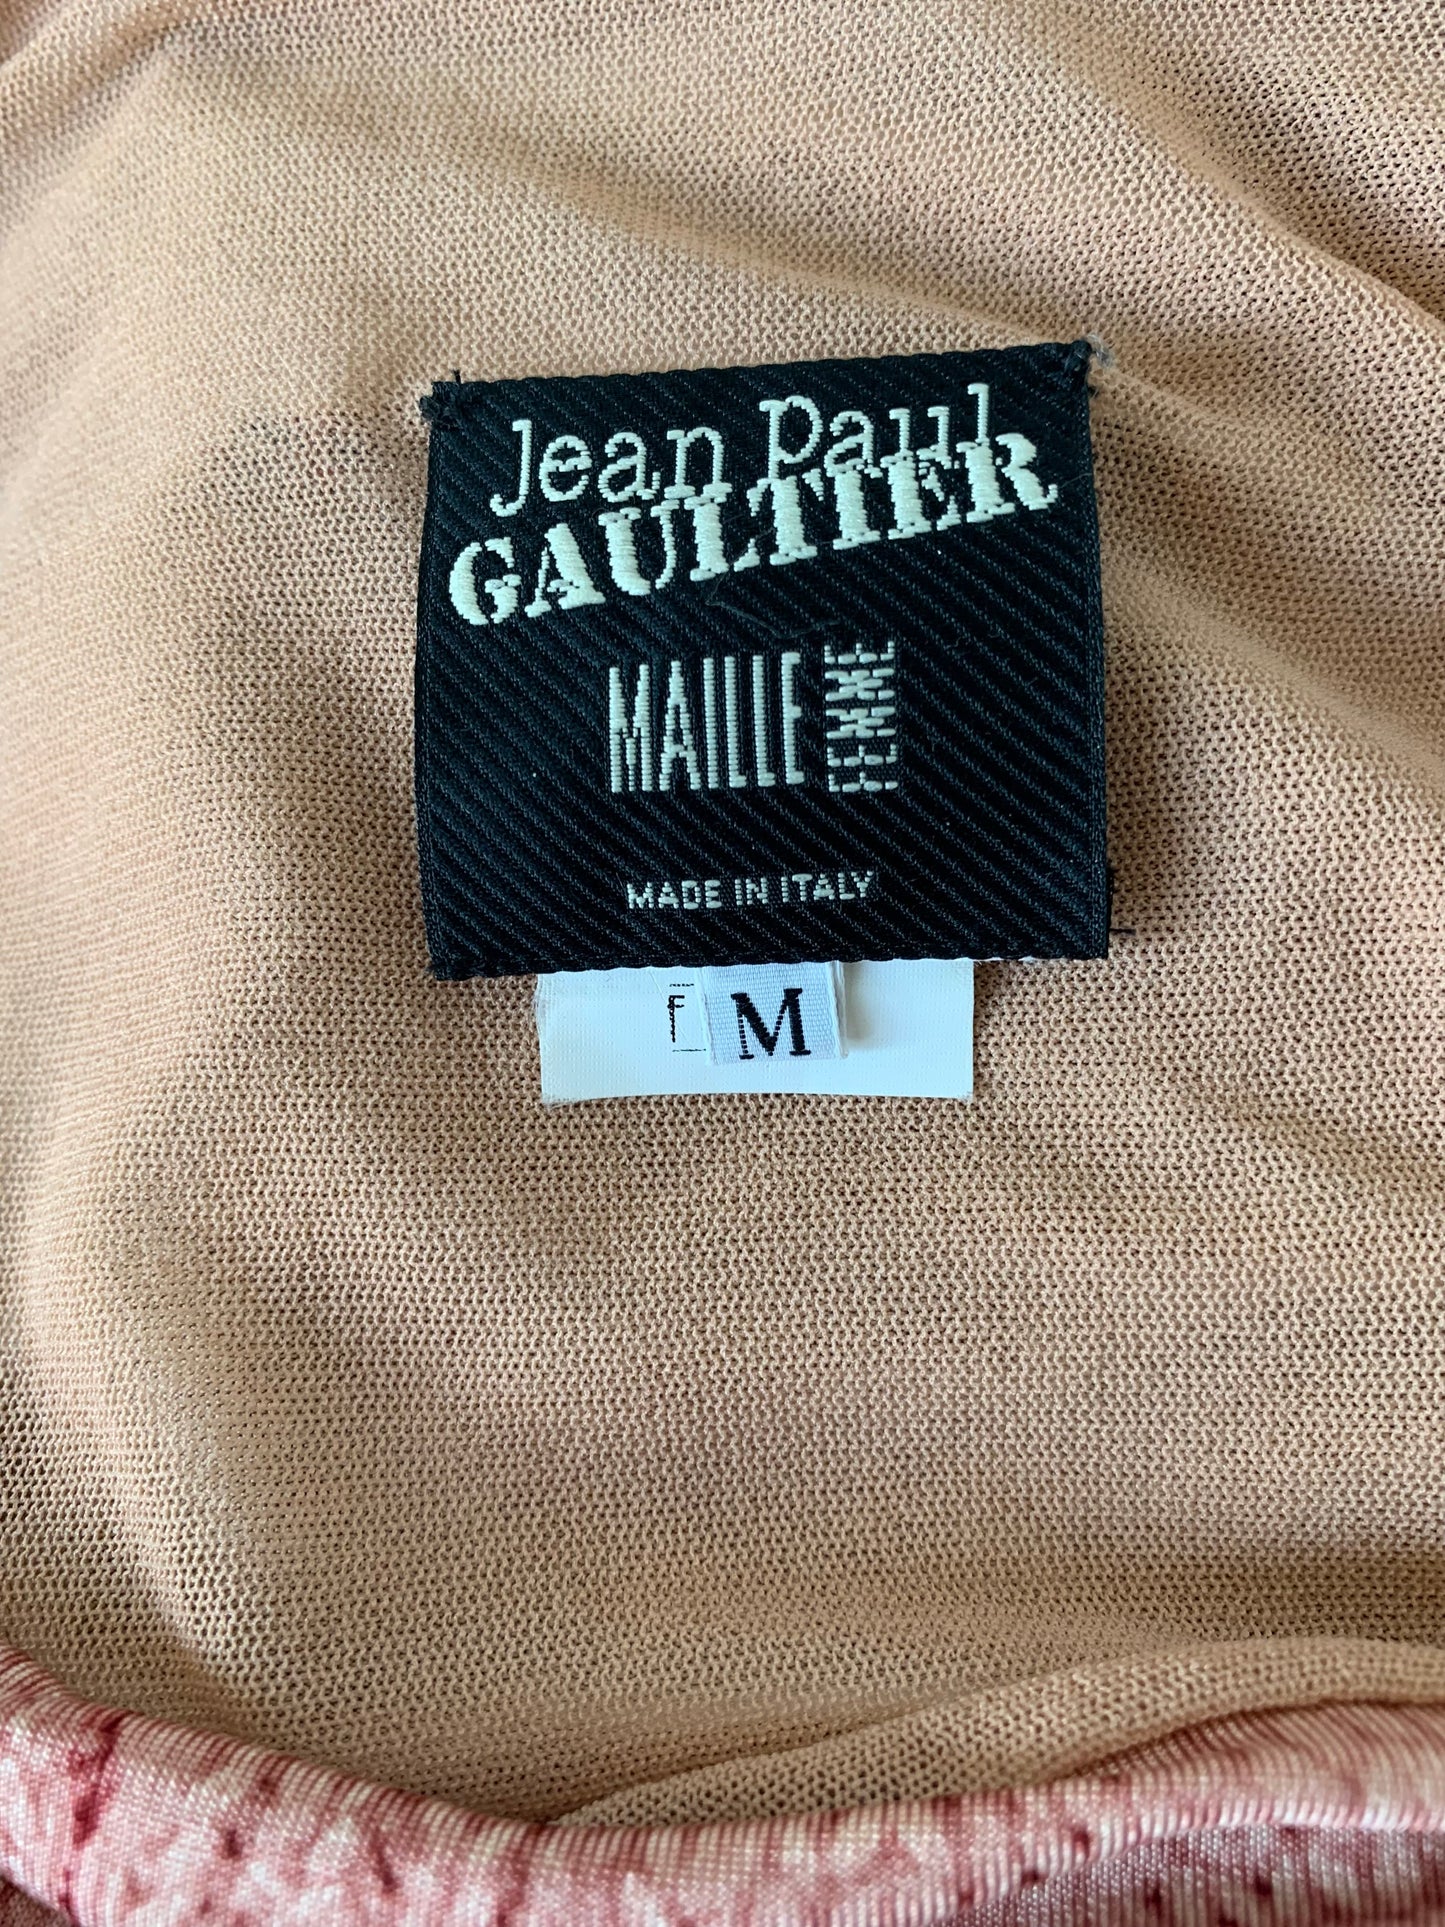 Jean Paul Gaultier FW 2004 Trompe L'oeil Top